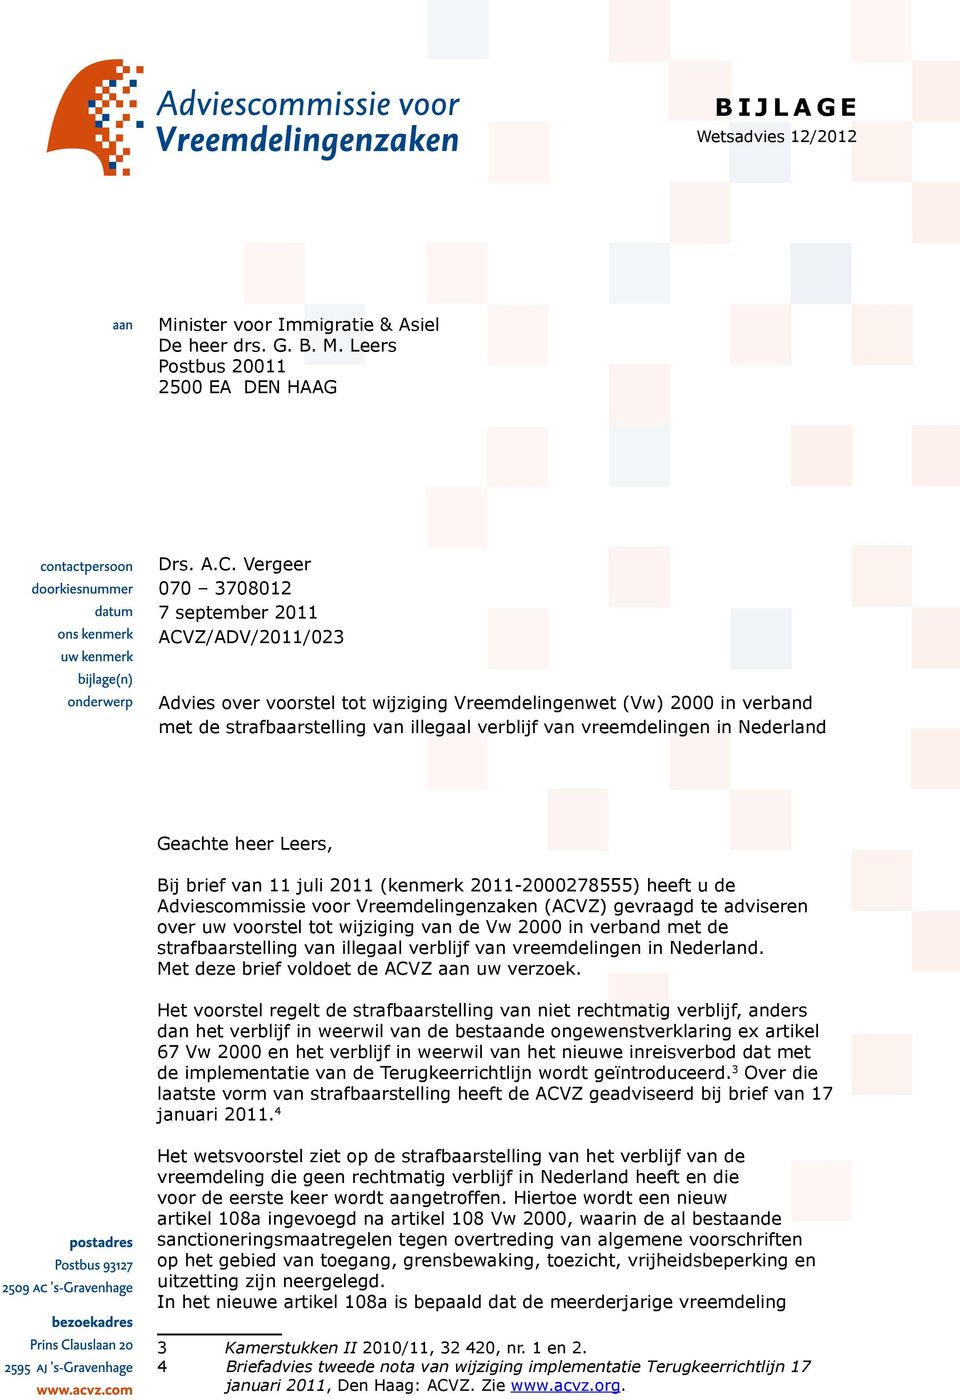 Nederland Geachte heer Leers, Bij brief van 11 juli 2011 (kenmerk 2011-2000278555) heeft u de Adviescommissie voor Vreemdelingenzaken (ACVZ) gevraagd te adviseren over uw voorstel tot wijziging van